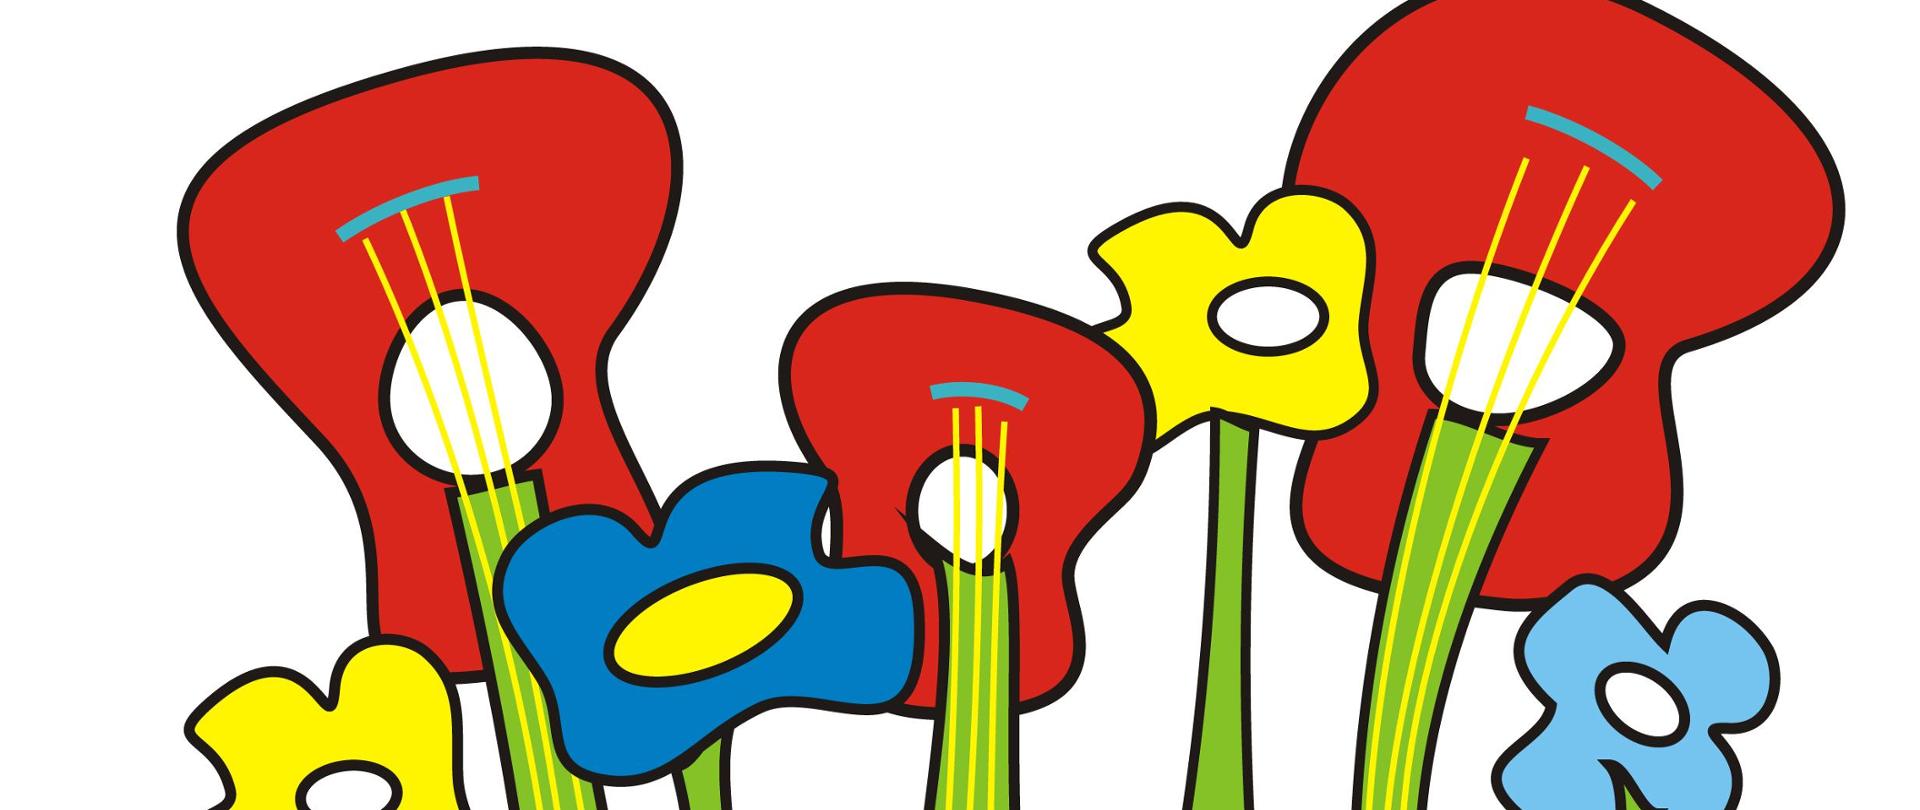 w dolnej części żółte, niebieskie i czerwone kwiaty, czerwone kwiaty w kształcie gitary, powyżej żółty motyl, całość na białym tle